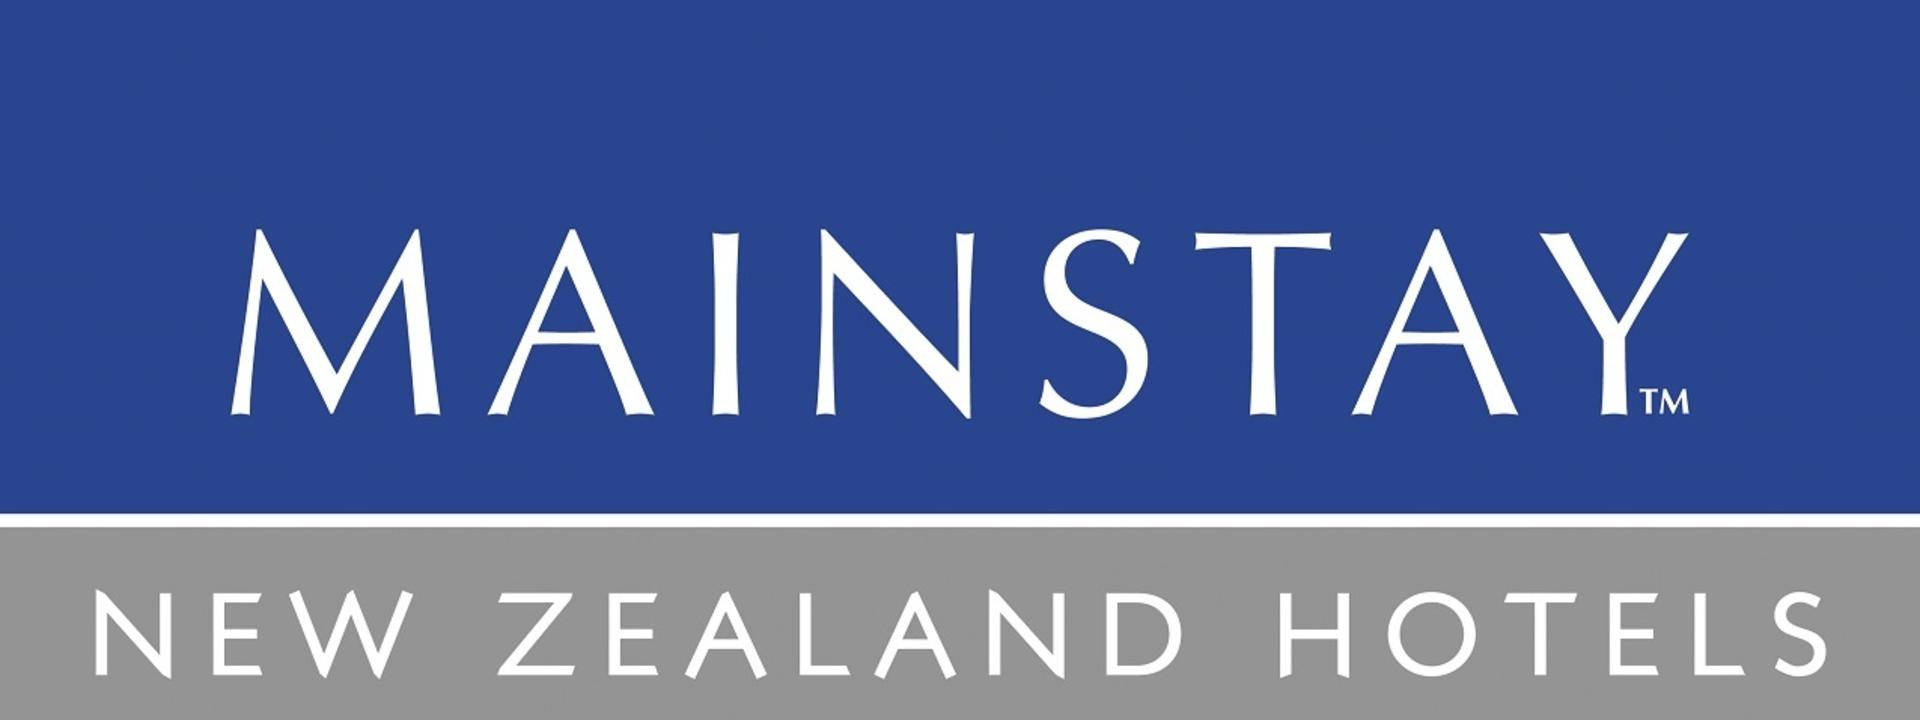 Logo: Mainstay Hotels New Zealand Ltd